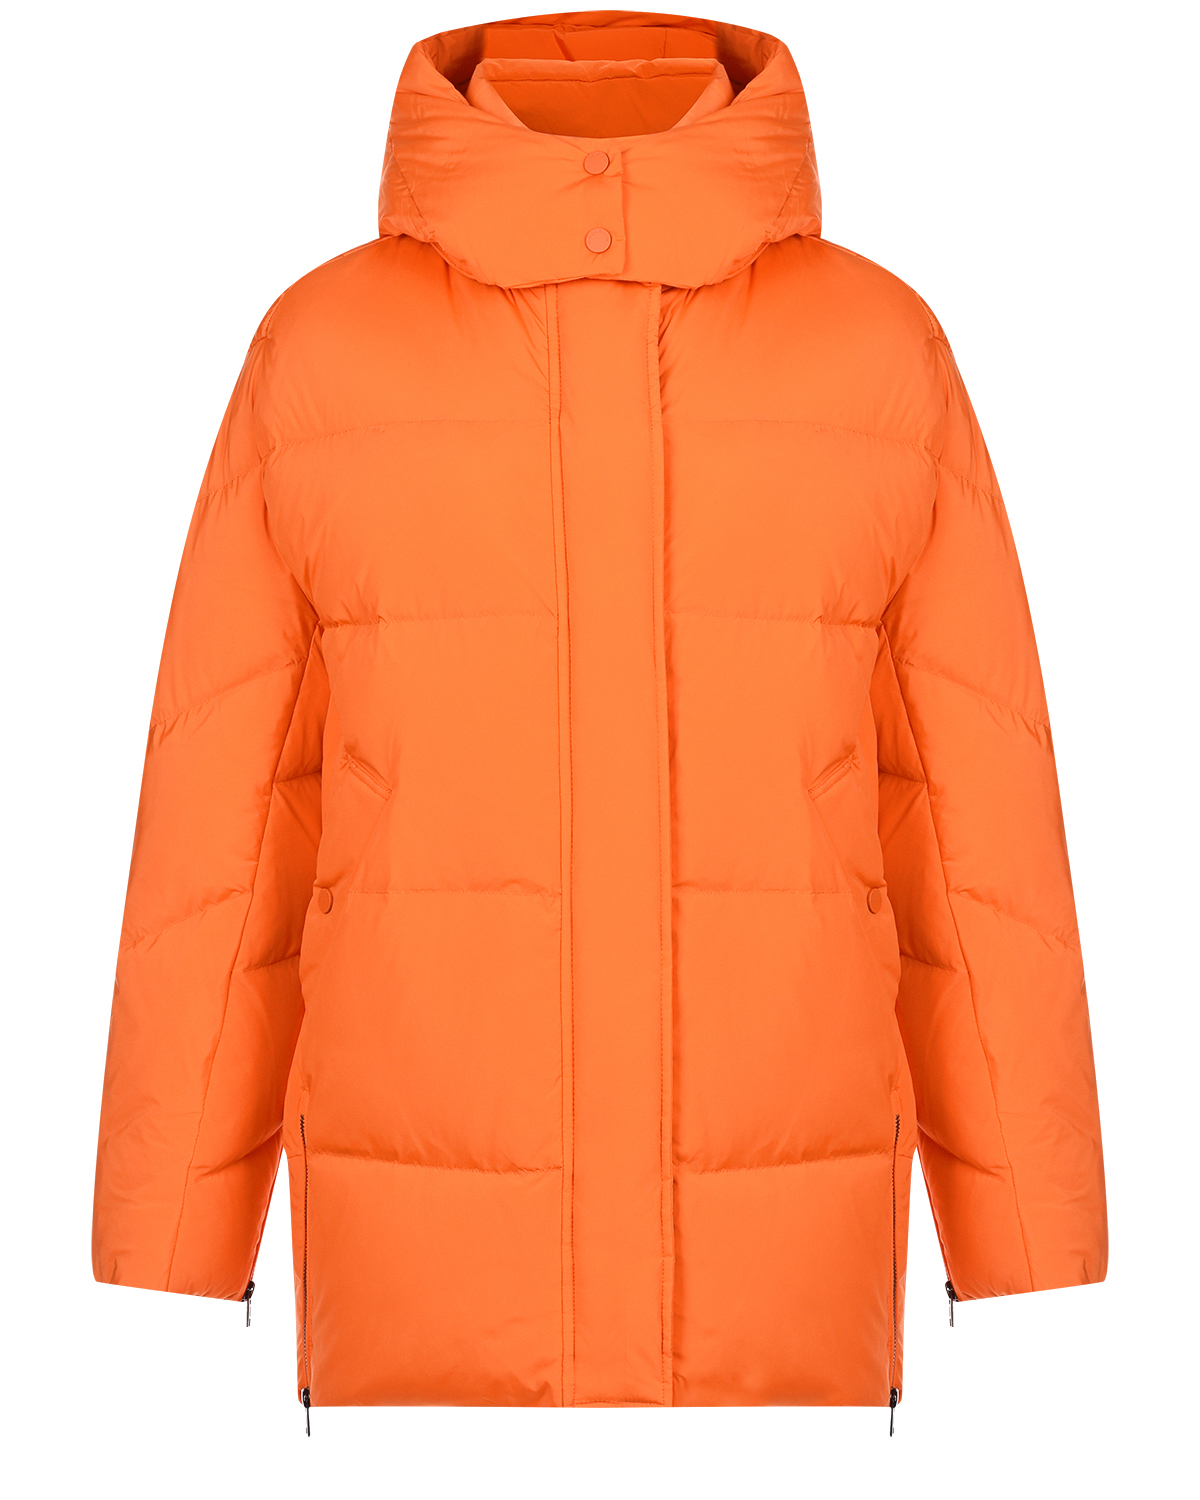 Оранжевое пальто-пуховик с капюшоном Woolrich, размер 44, цвет оранжевый